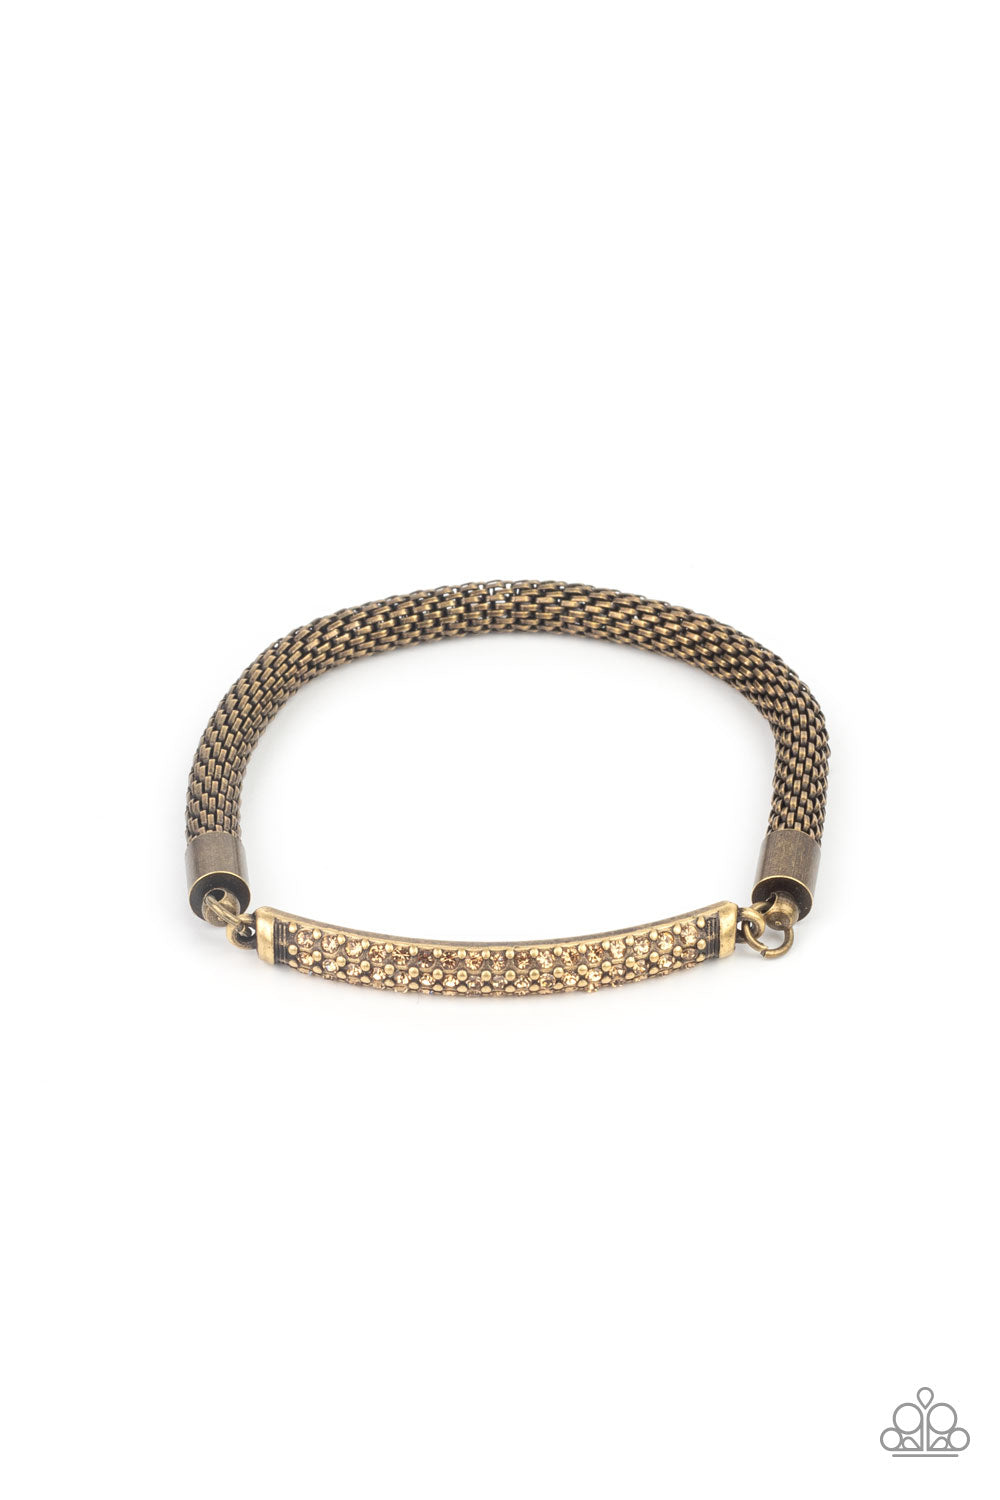 Fearlessly Unfiltered - Brass Bracelet - Princess Glam Shop